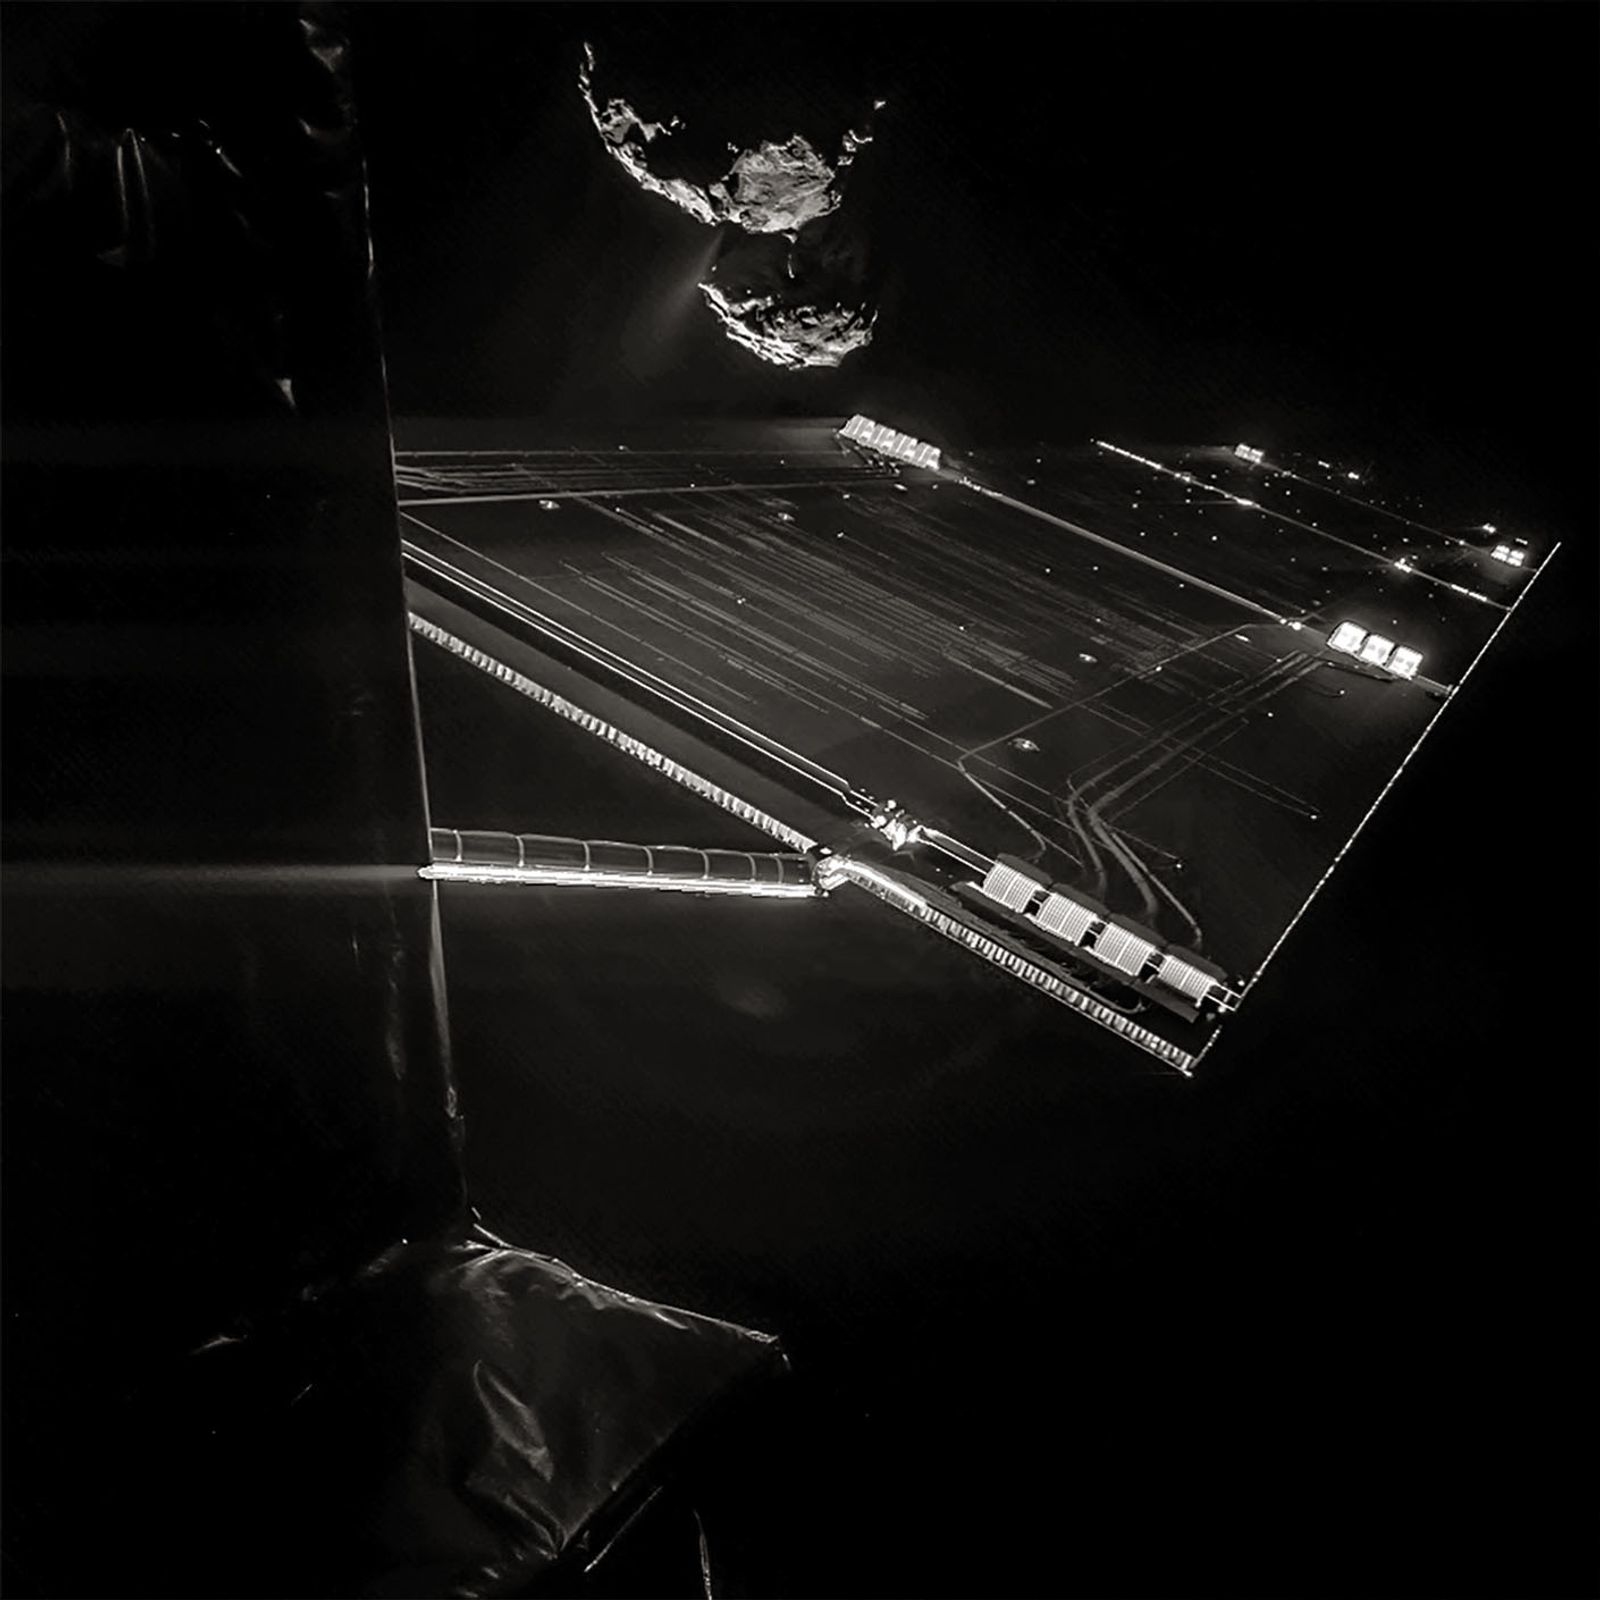 © ESA/ROSETTA/PHILAE/CIVA. Self-portrait of Rosetta with Comet Tchoury